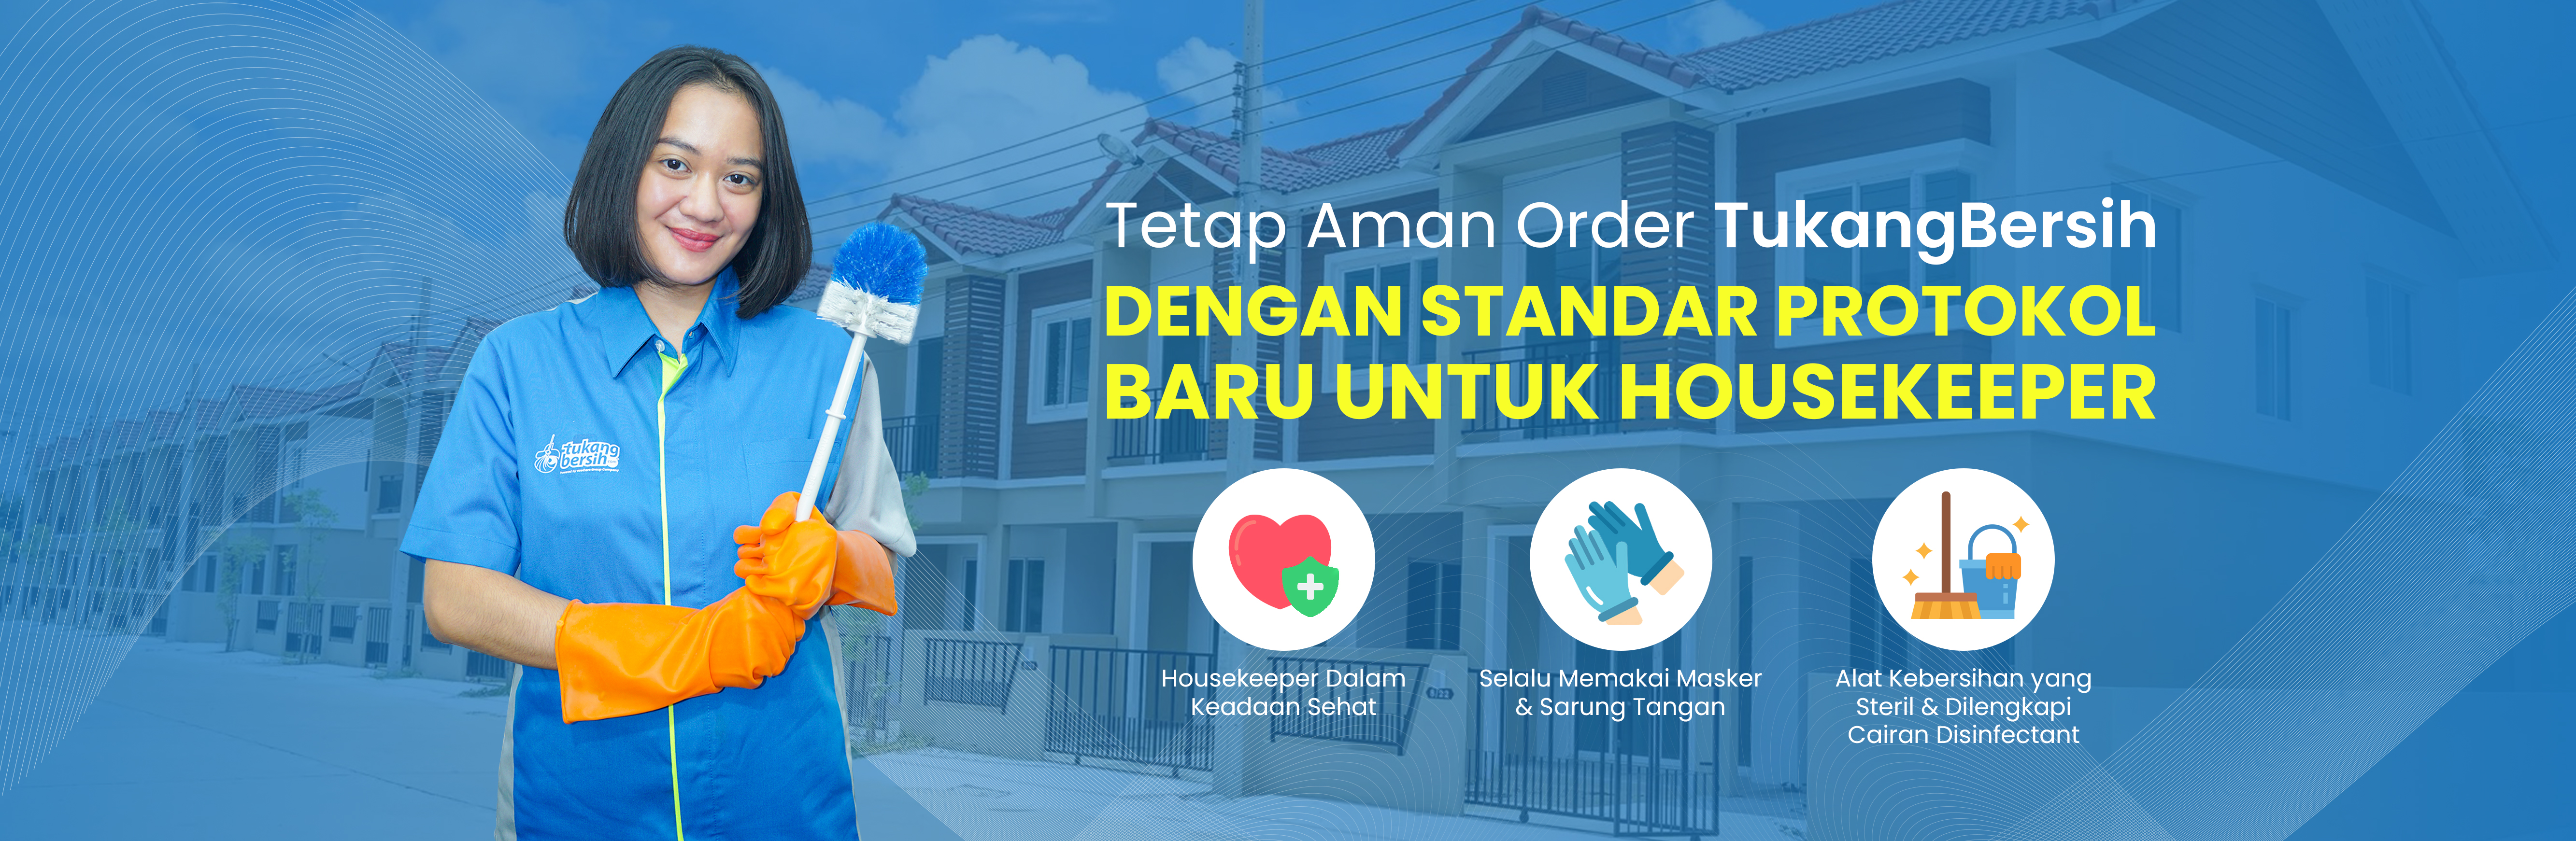 Tukang Bersih - Tetap aman order Tukang Bersih dengan Standar Protokol Baru untuk Housekeeper